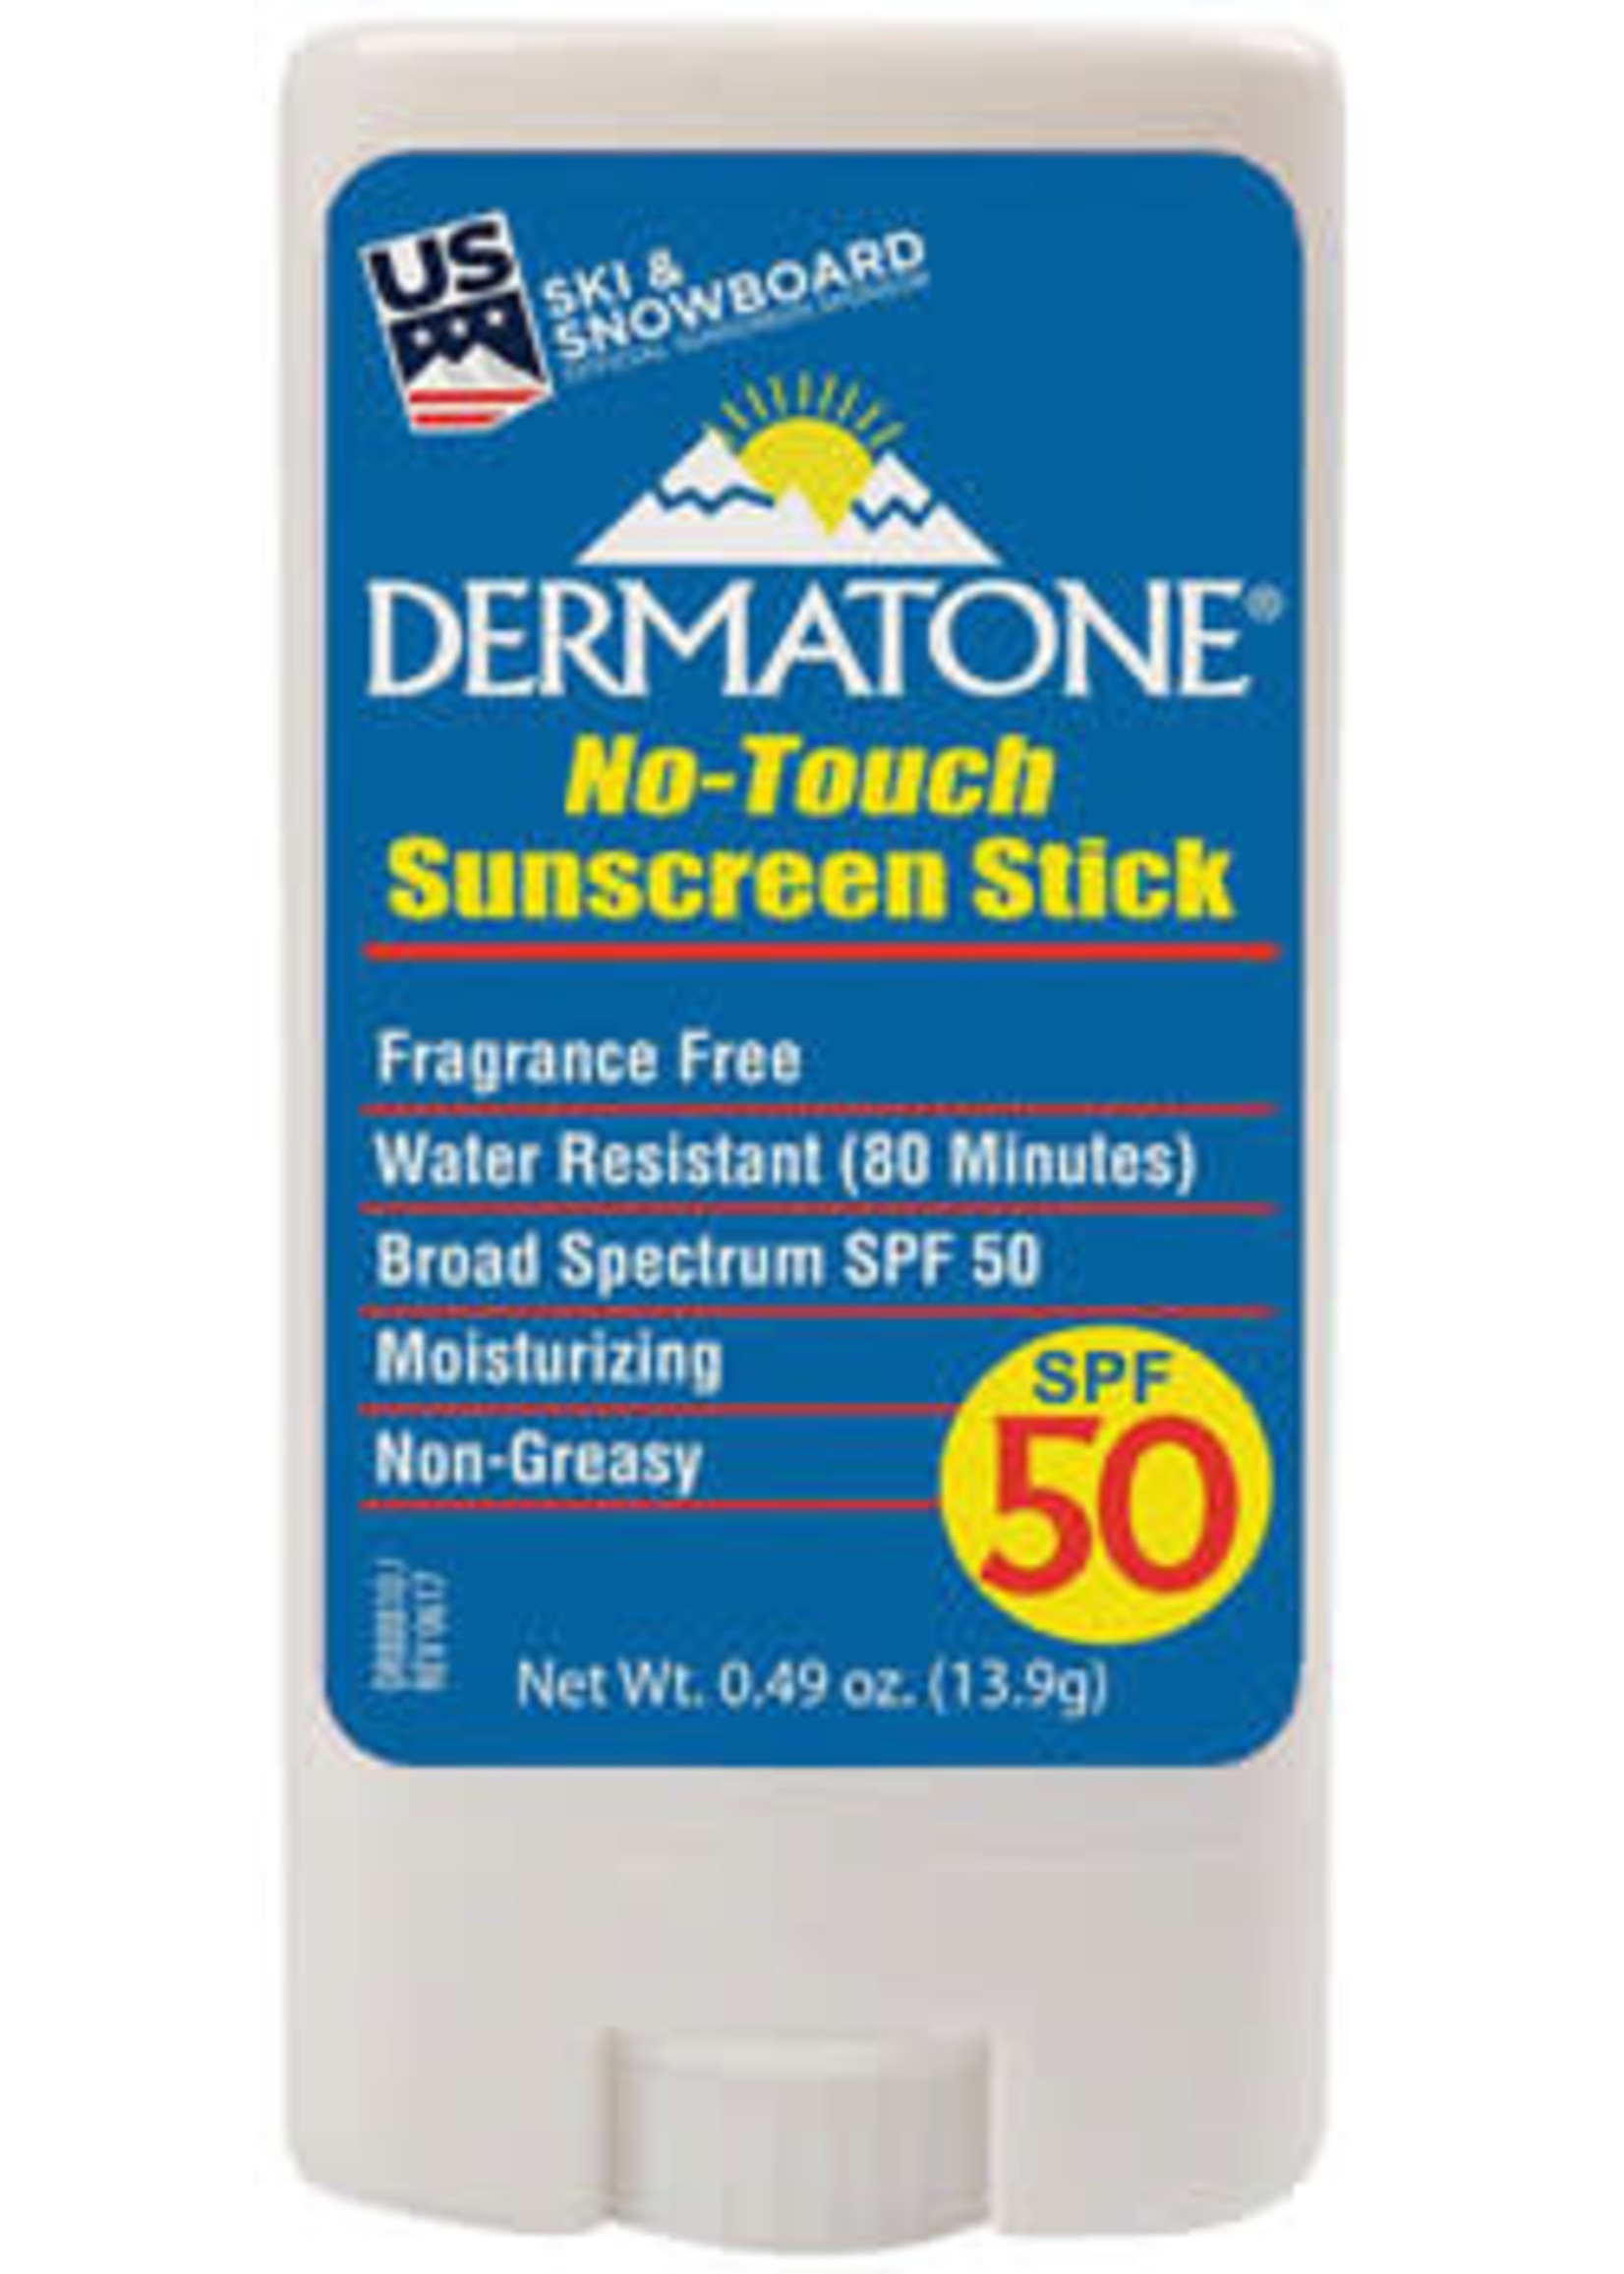 Dermatone Dermatone No-Touch Sunscreen Stick - 0.49oz, SPF 50